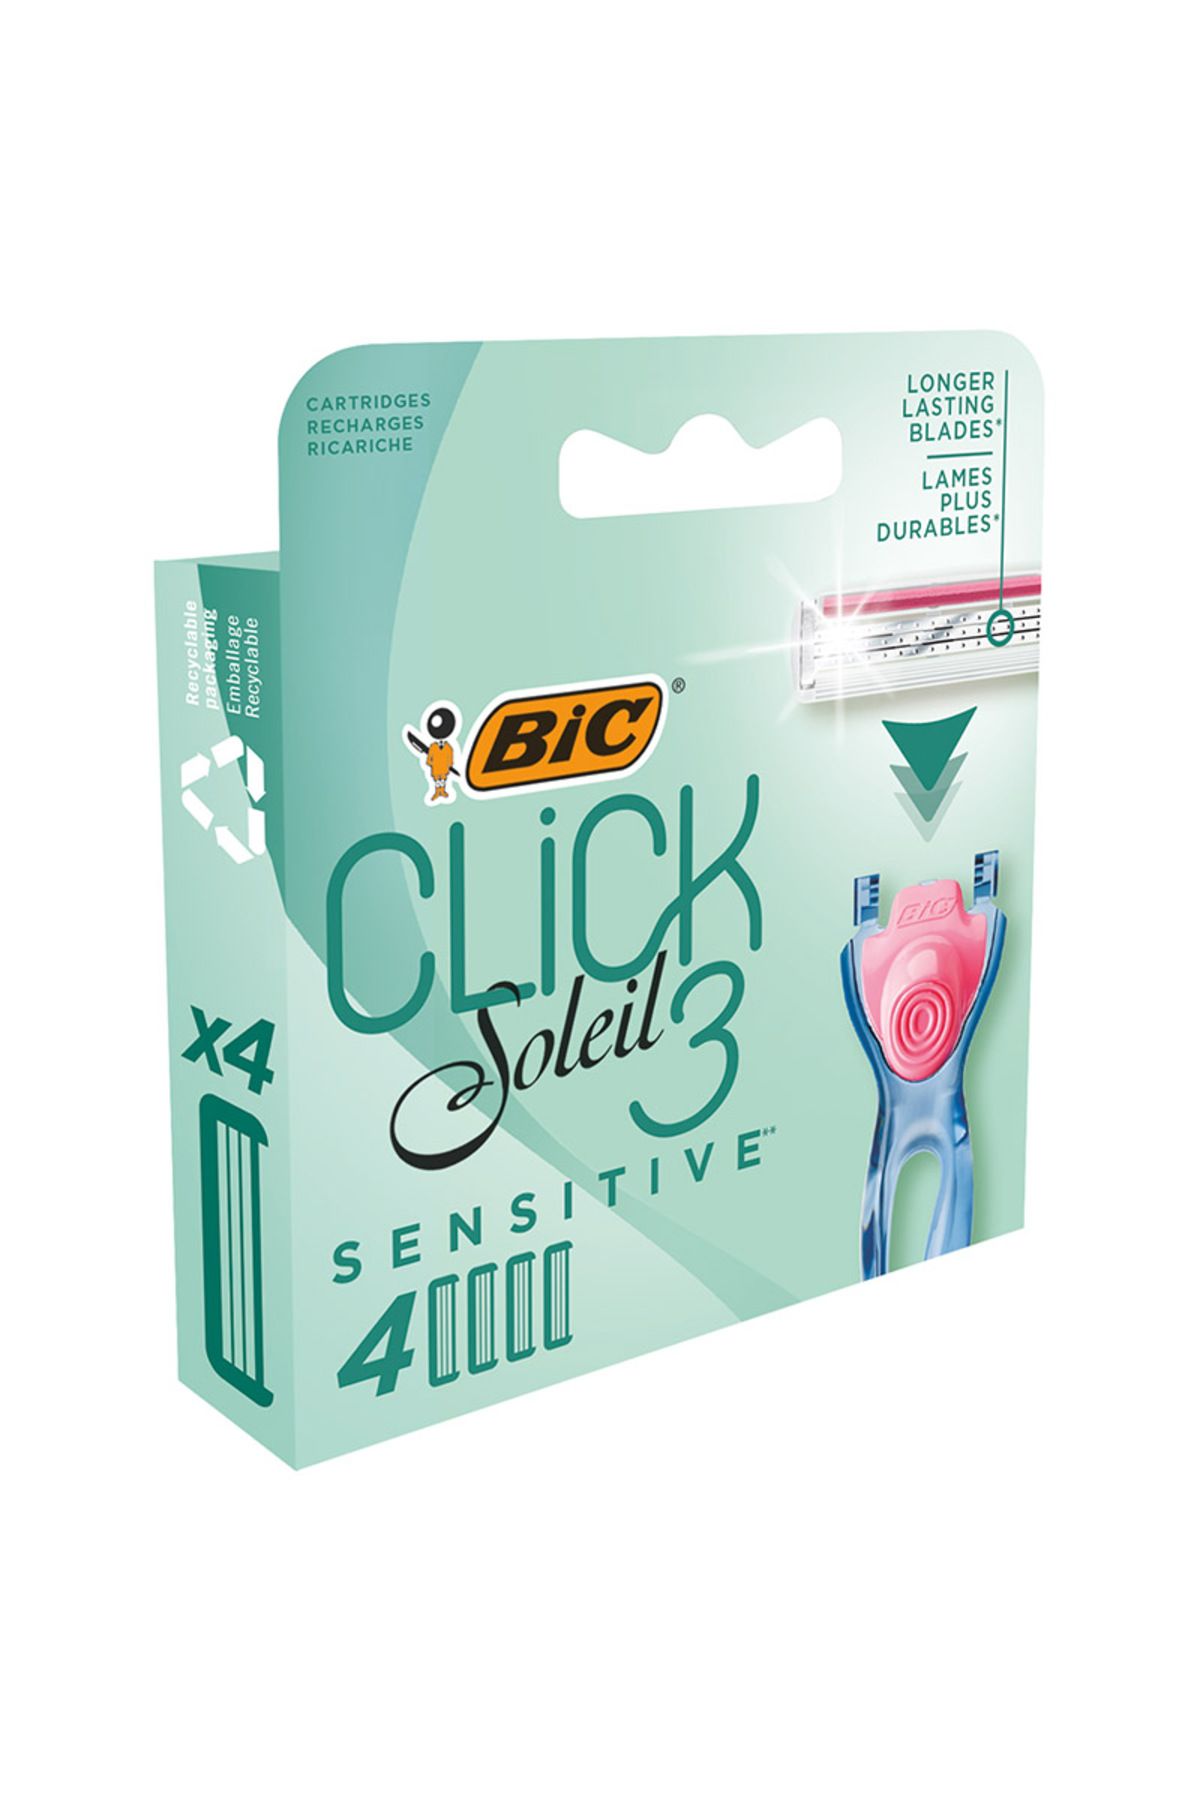 Bic Soleil Click 3 Sistem Kadın Tıraş Bıçağı 4'lü Yedek Kartuş